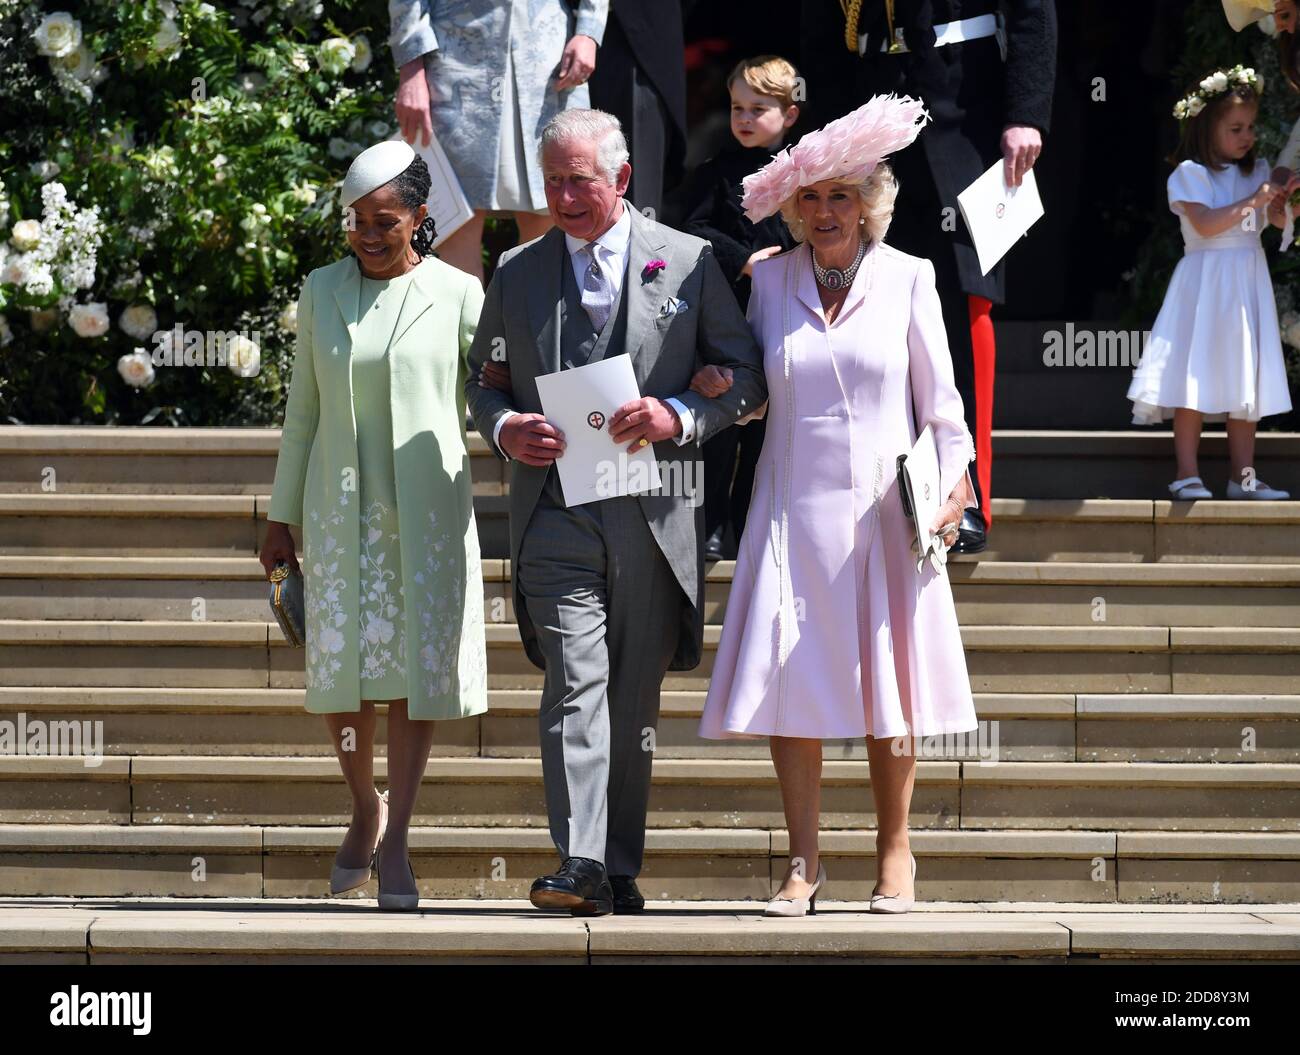 La mère de Meghan, Doria Ragland (L), le prince Charles (C) et Camilla (R)  la duchesse de Cornwall quittent la chapelle Saint-Georges au château de  Windsor après la cérémonie de mariage royale